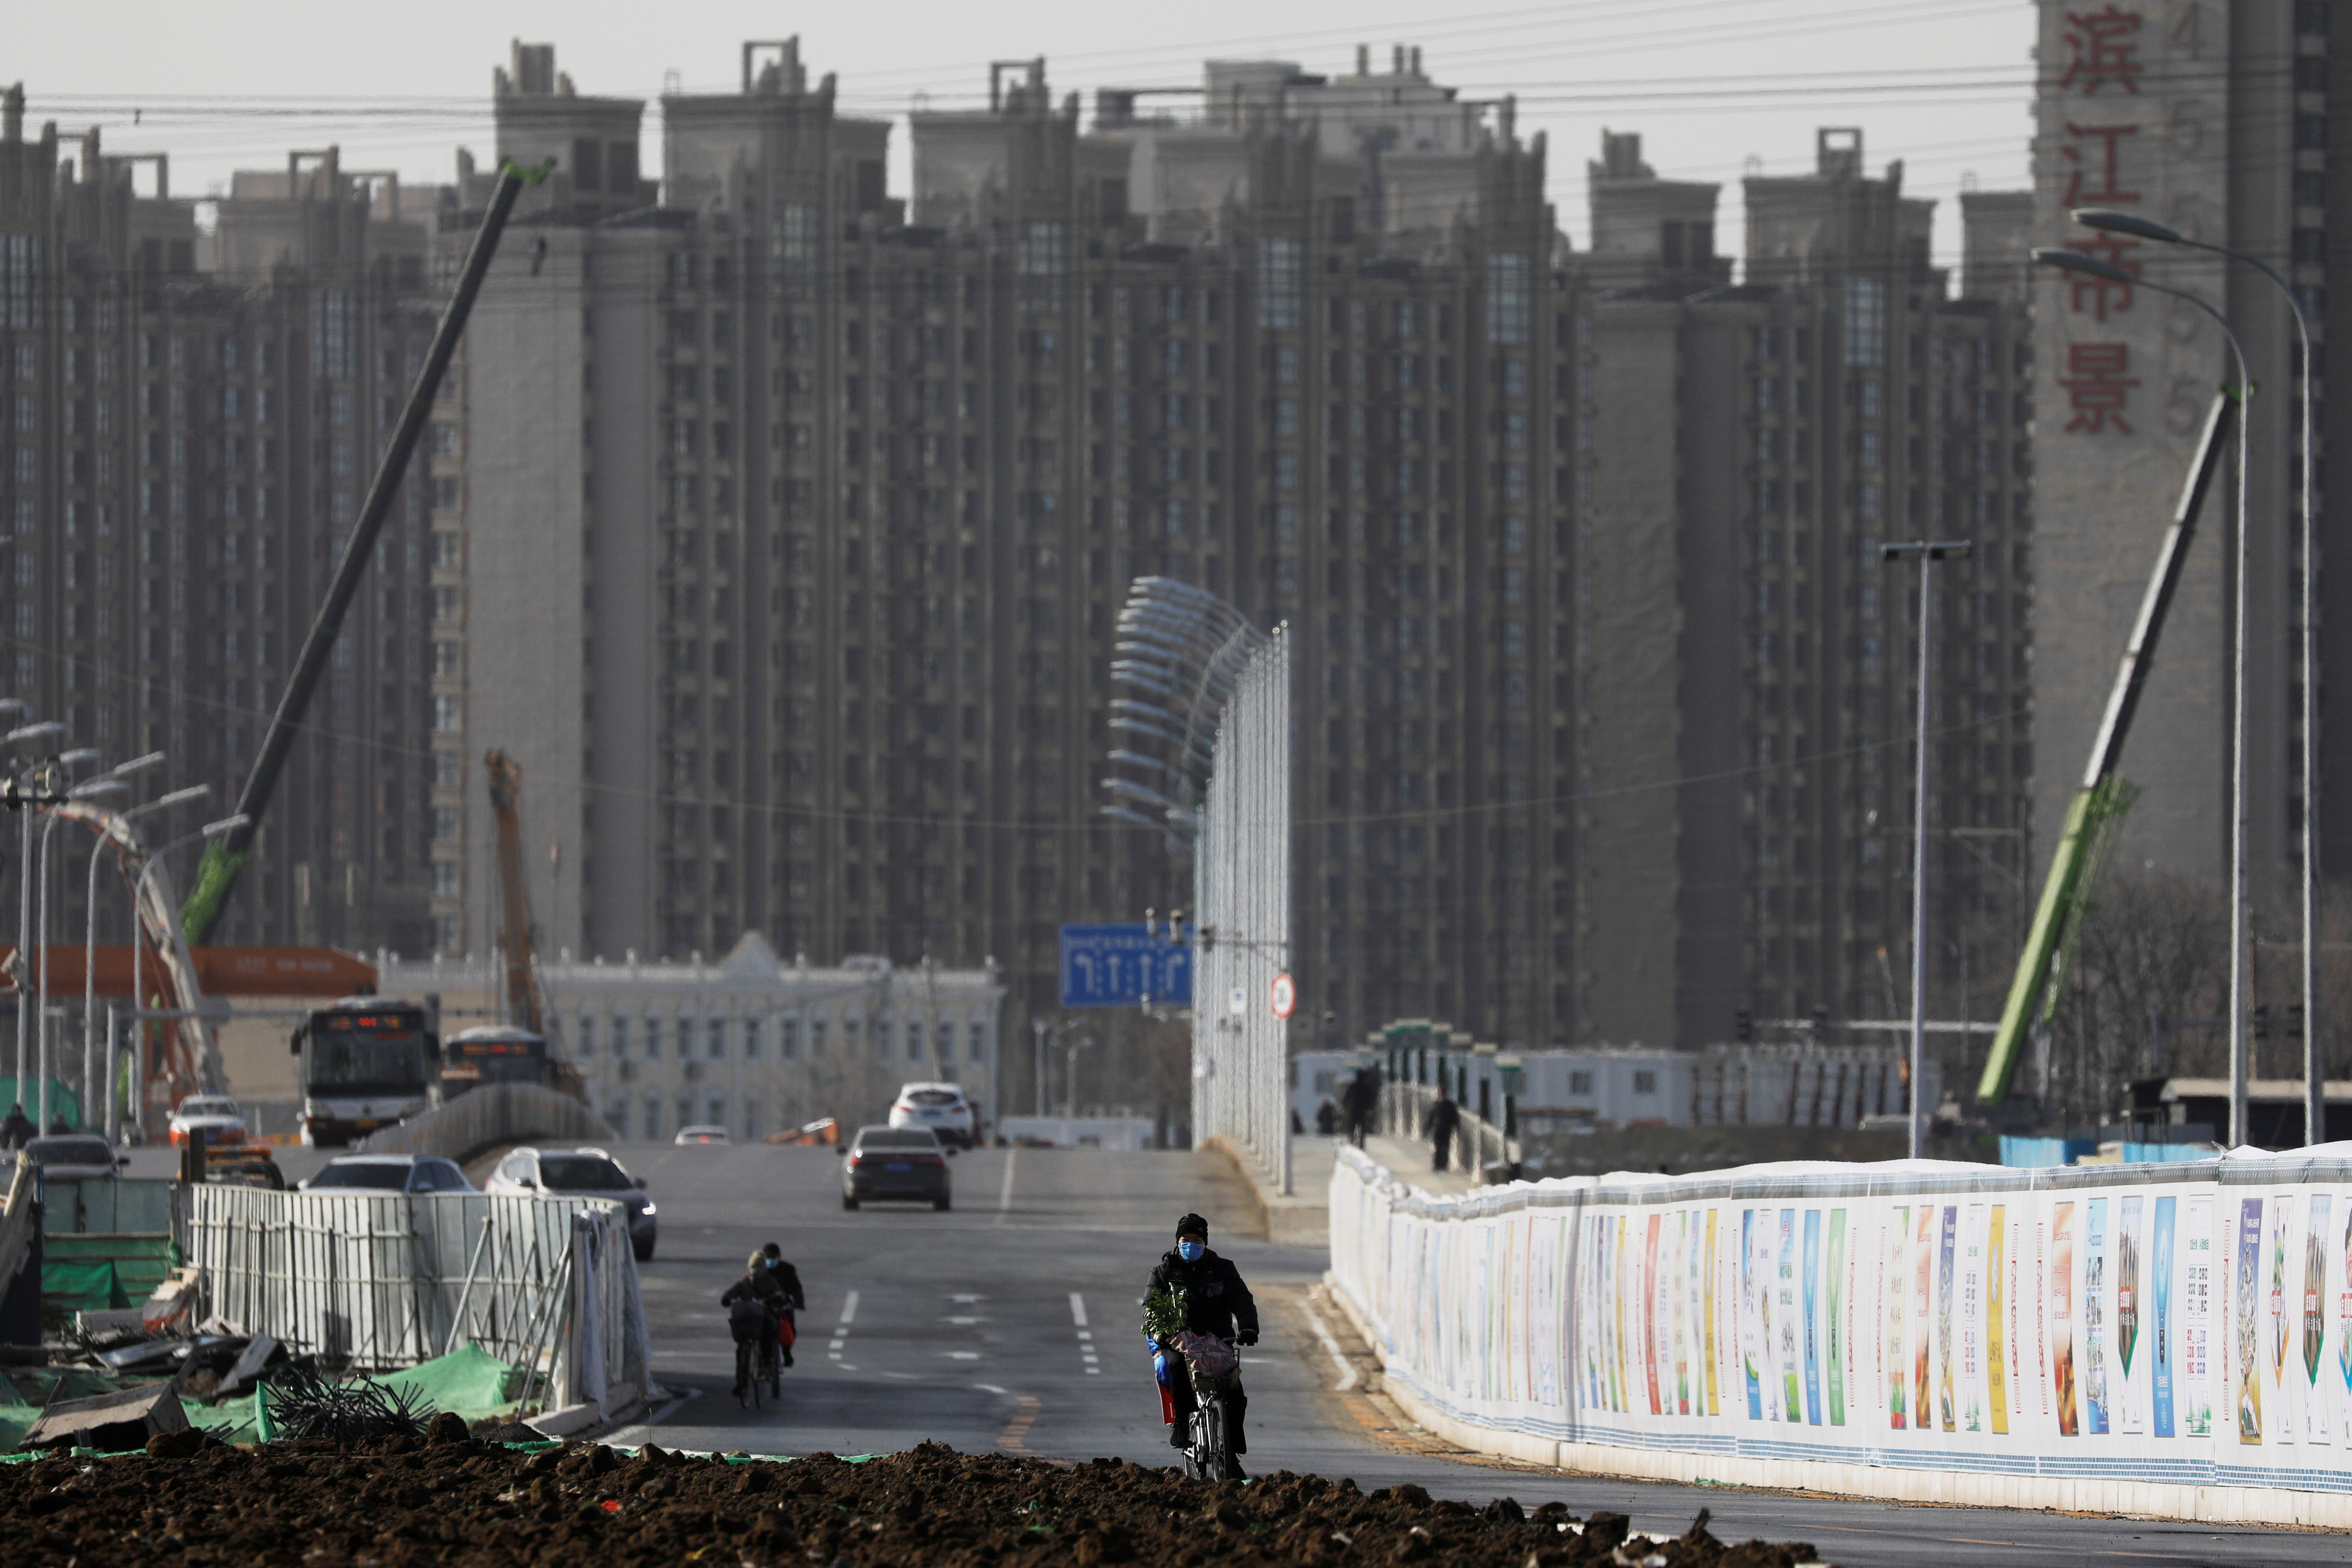 Construcción de viviendas en Beijing. El sector inmobiliario ha sufrido duros golpes en las últimas semanas en el país (Reuters)